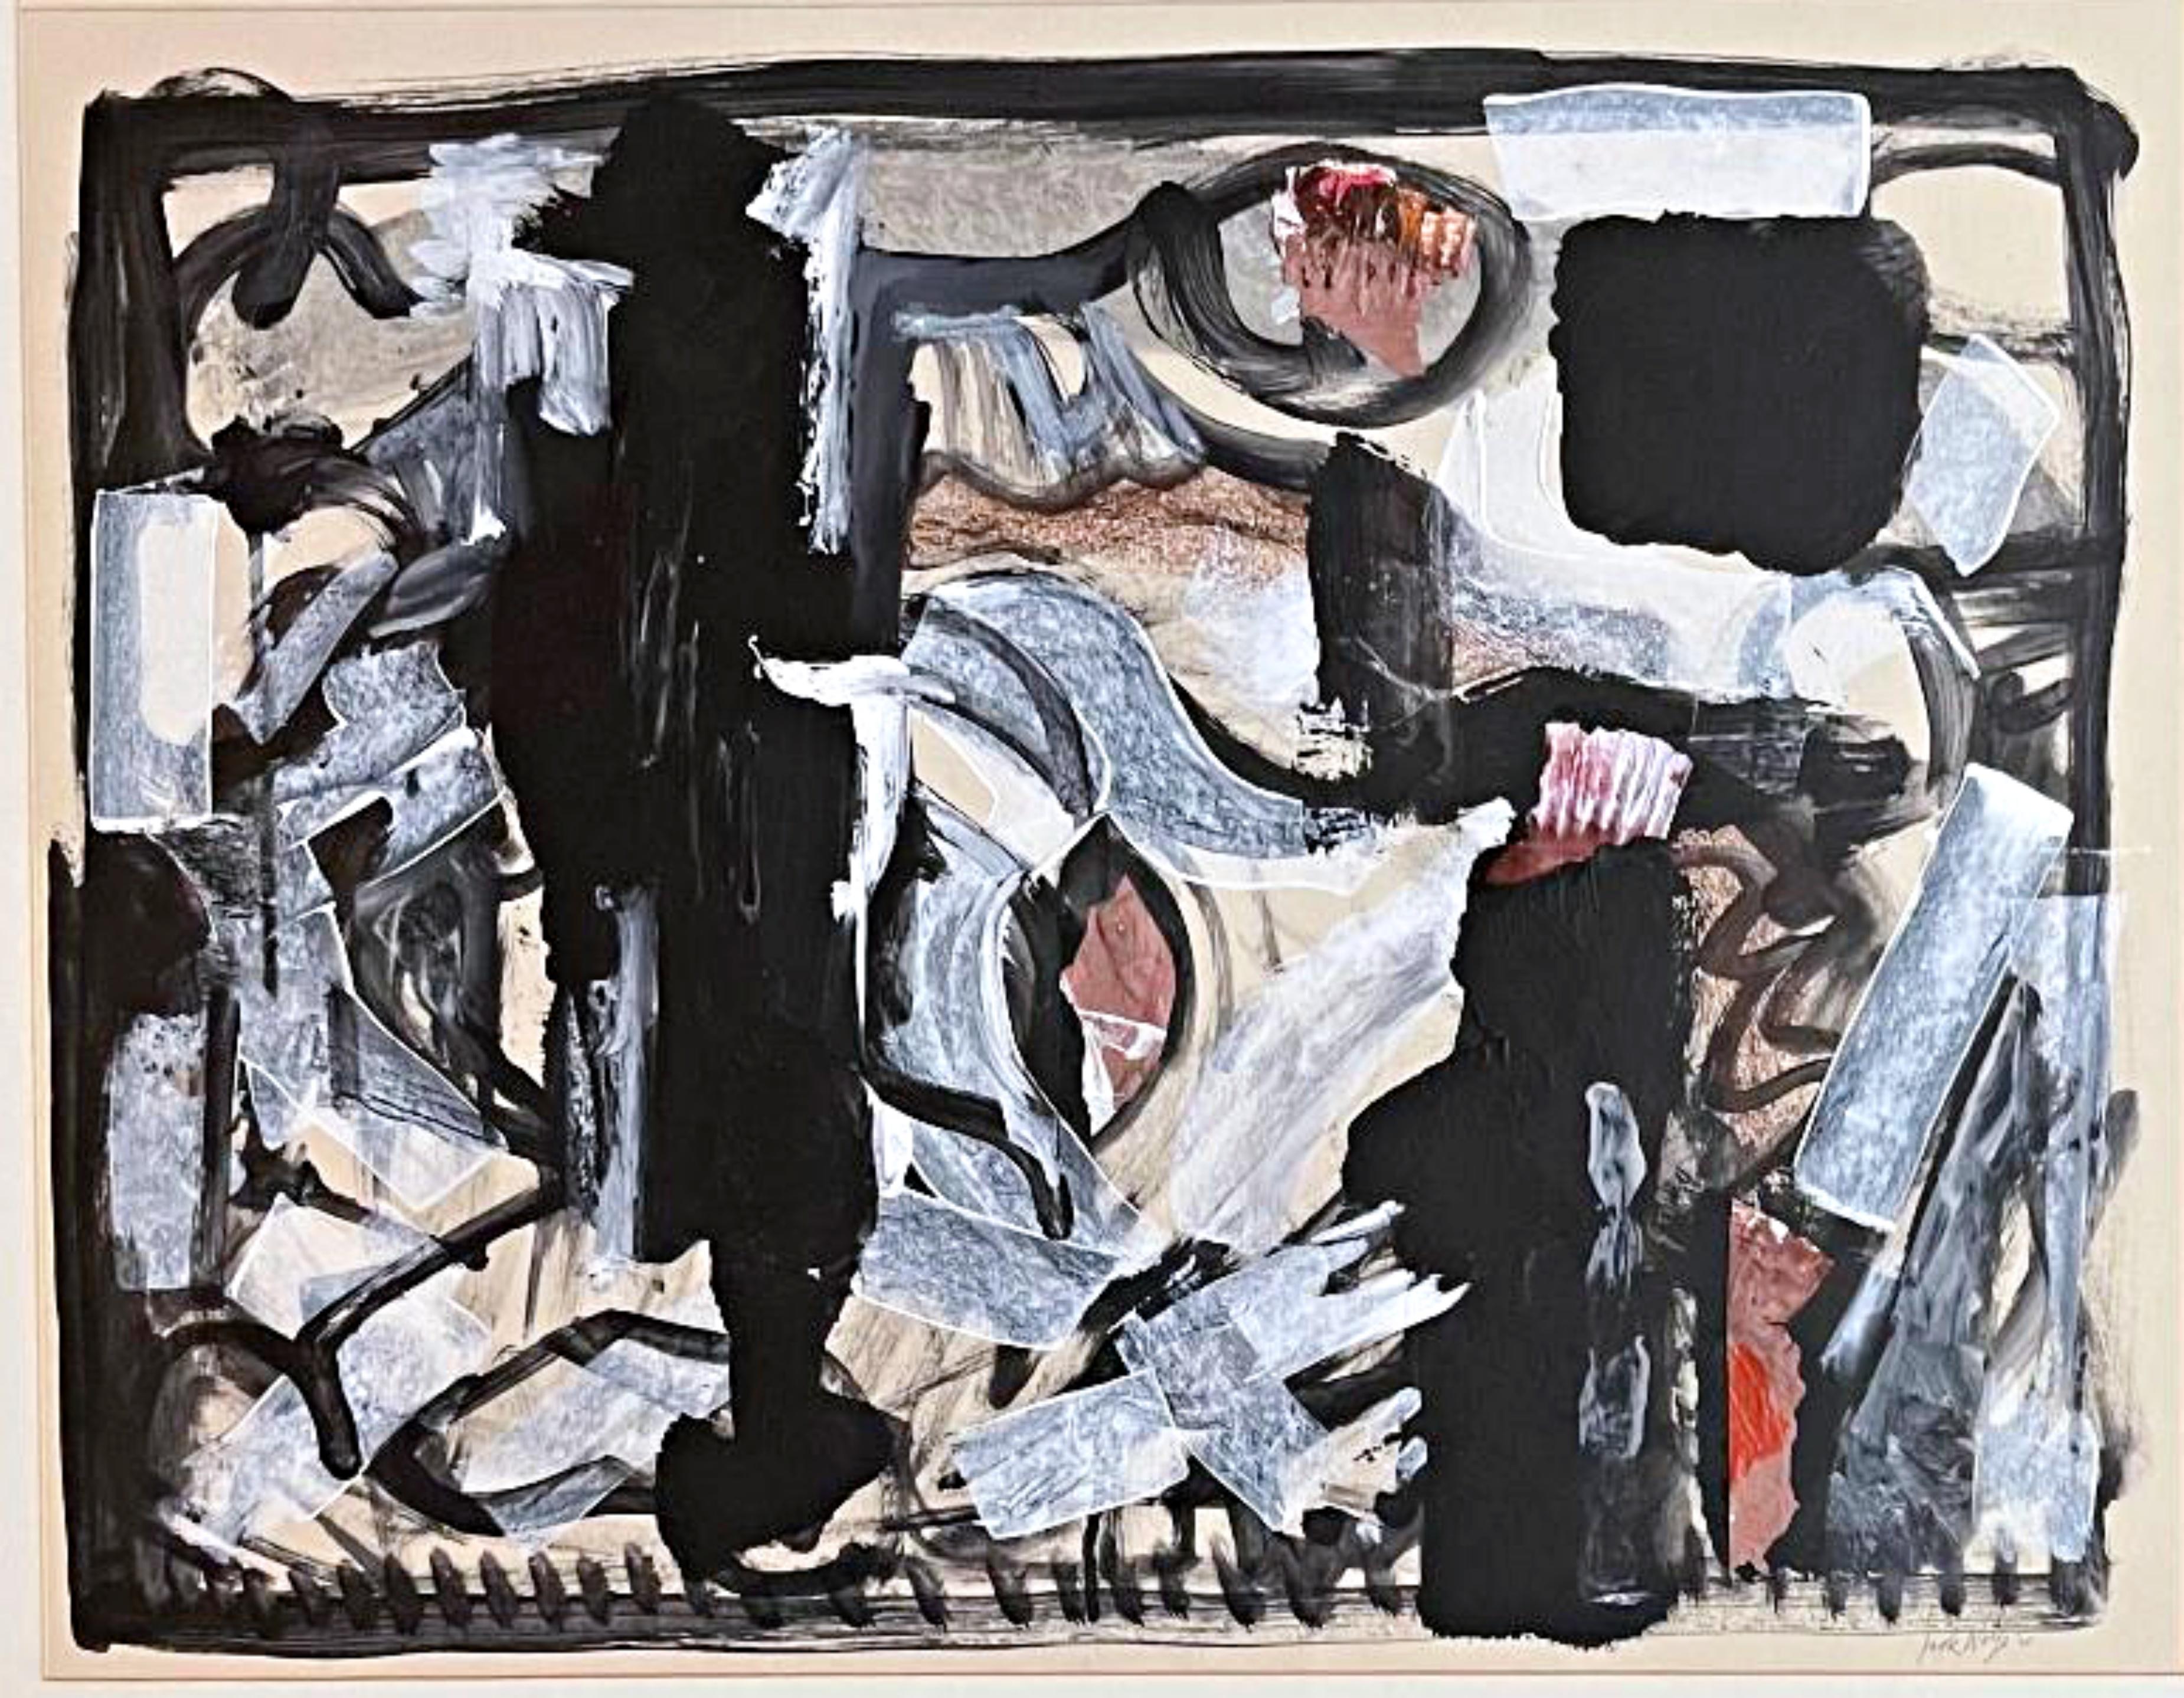 Abstrakt-expressionistisches Gemälde aus der Mitte des Jahrhunderts, signiert, bekannter Künstler, 1960er Jahre – Mixed Media Art von Jack Wolfe